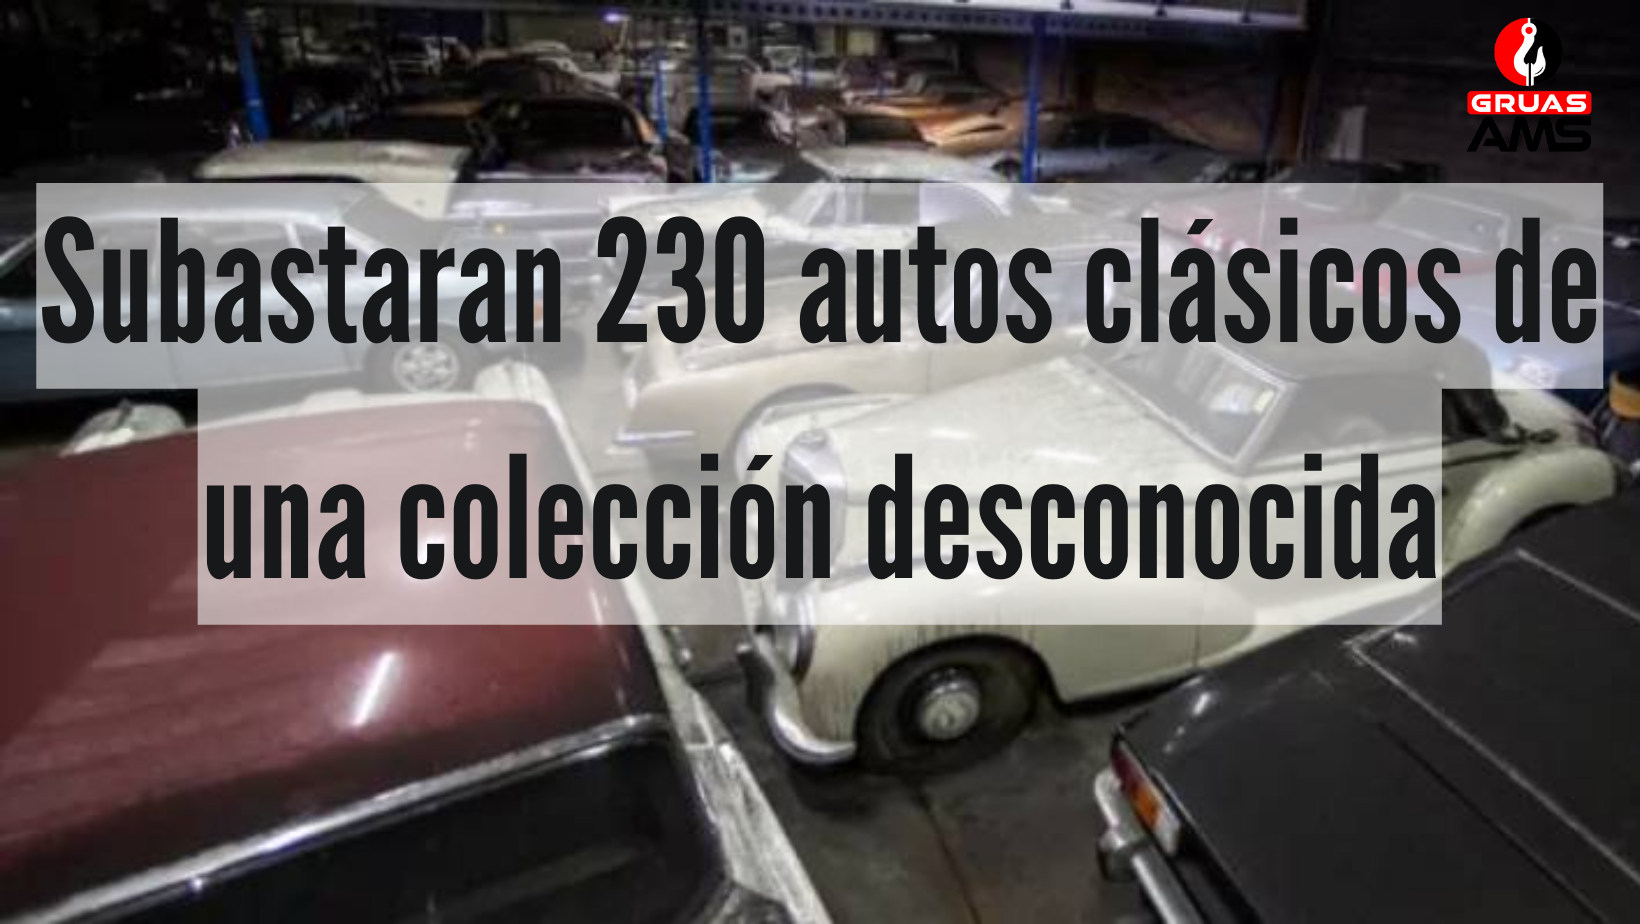 Subastaran 230 autos clásicos de una colección desconocida